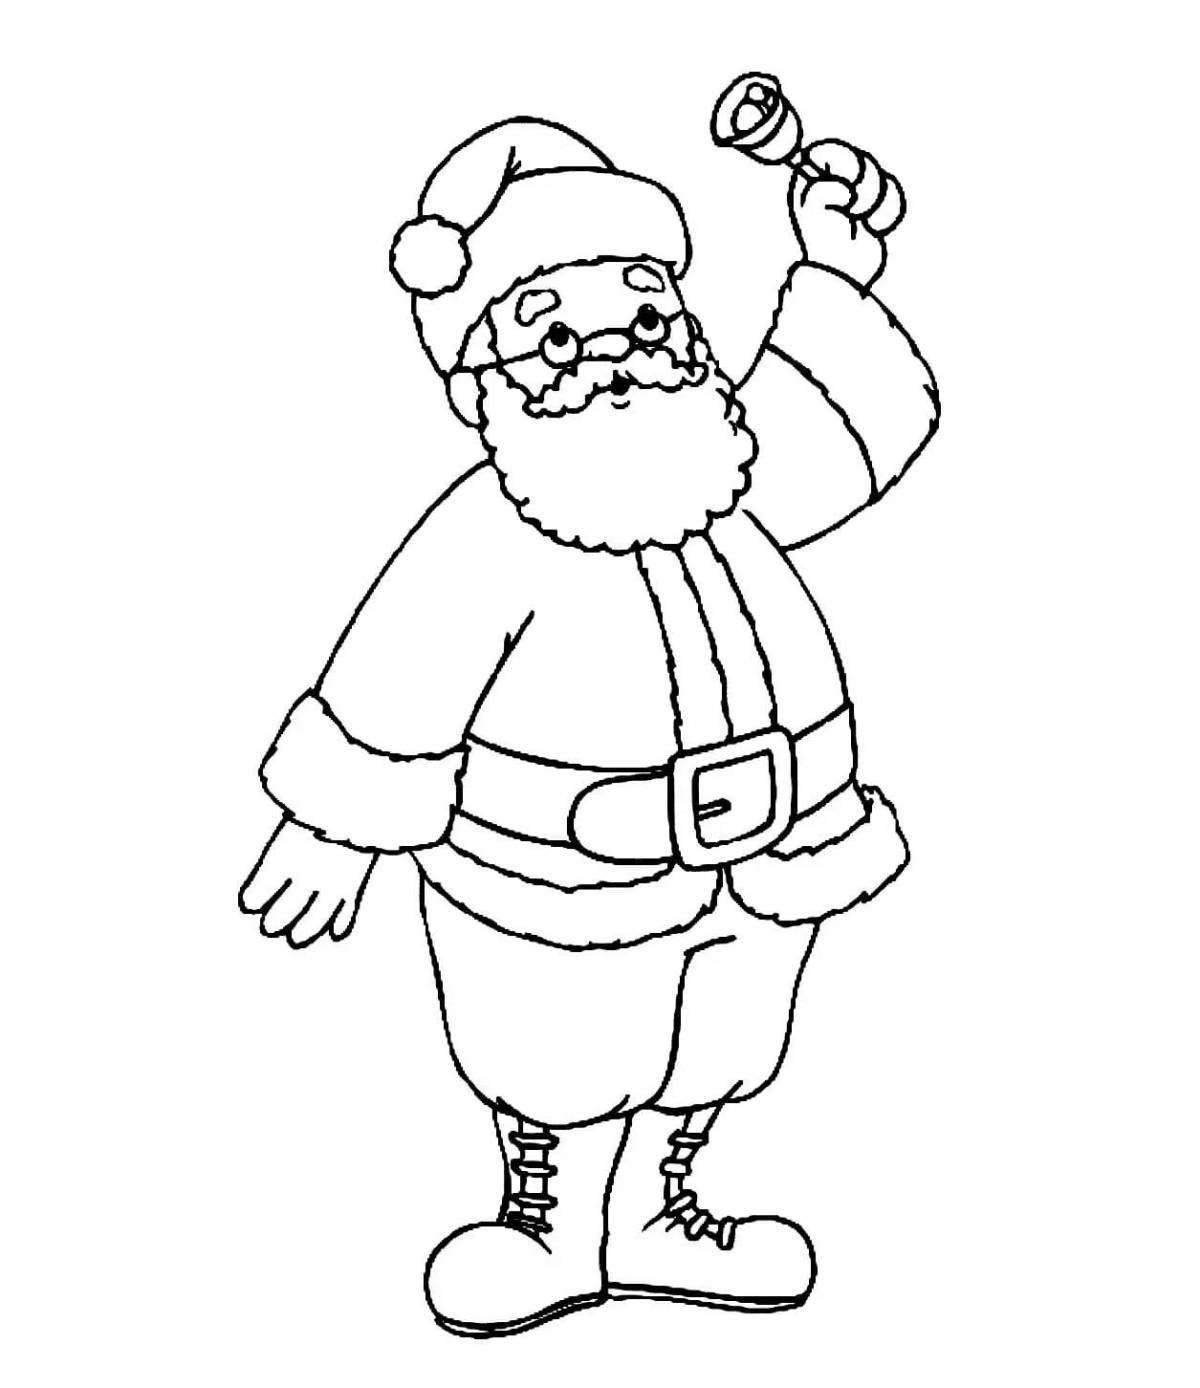 Санта Клаус рисунок для детей